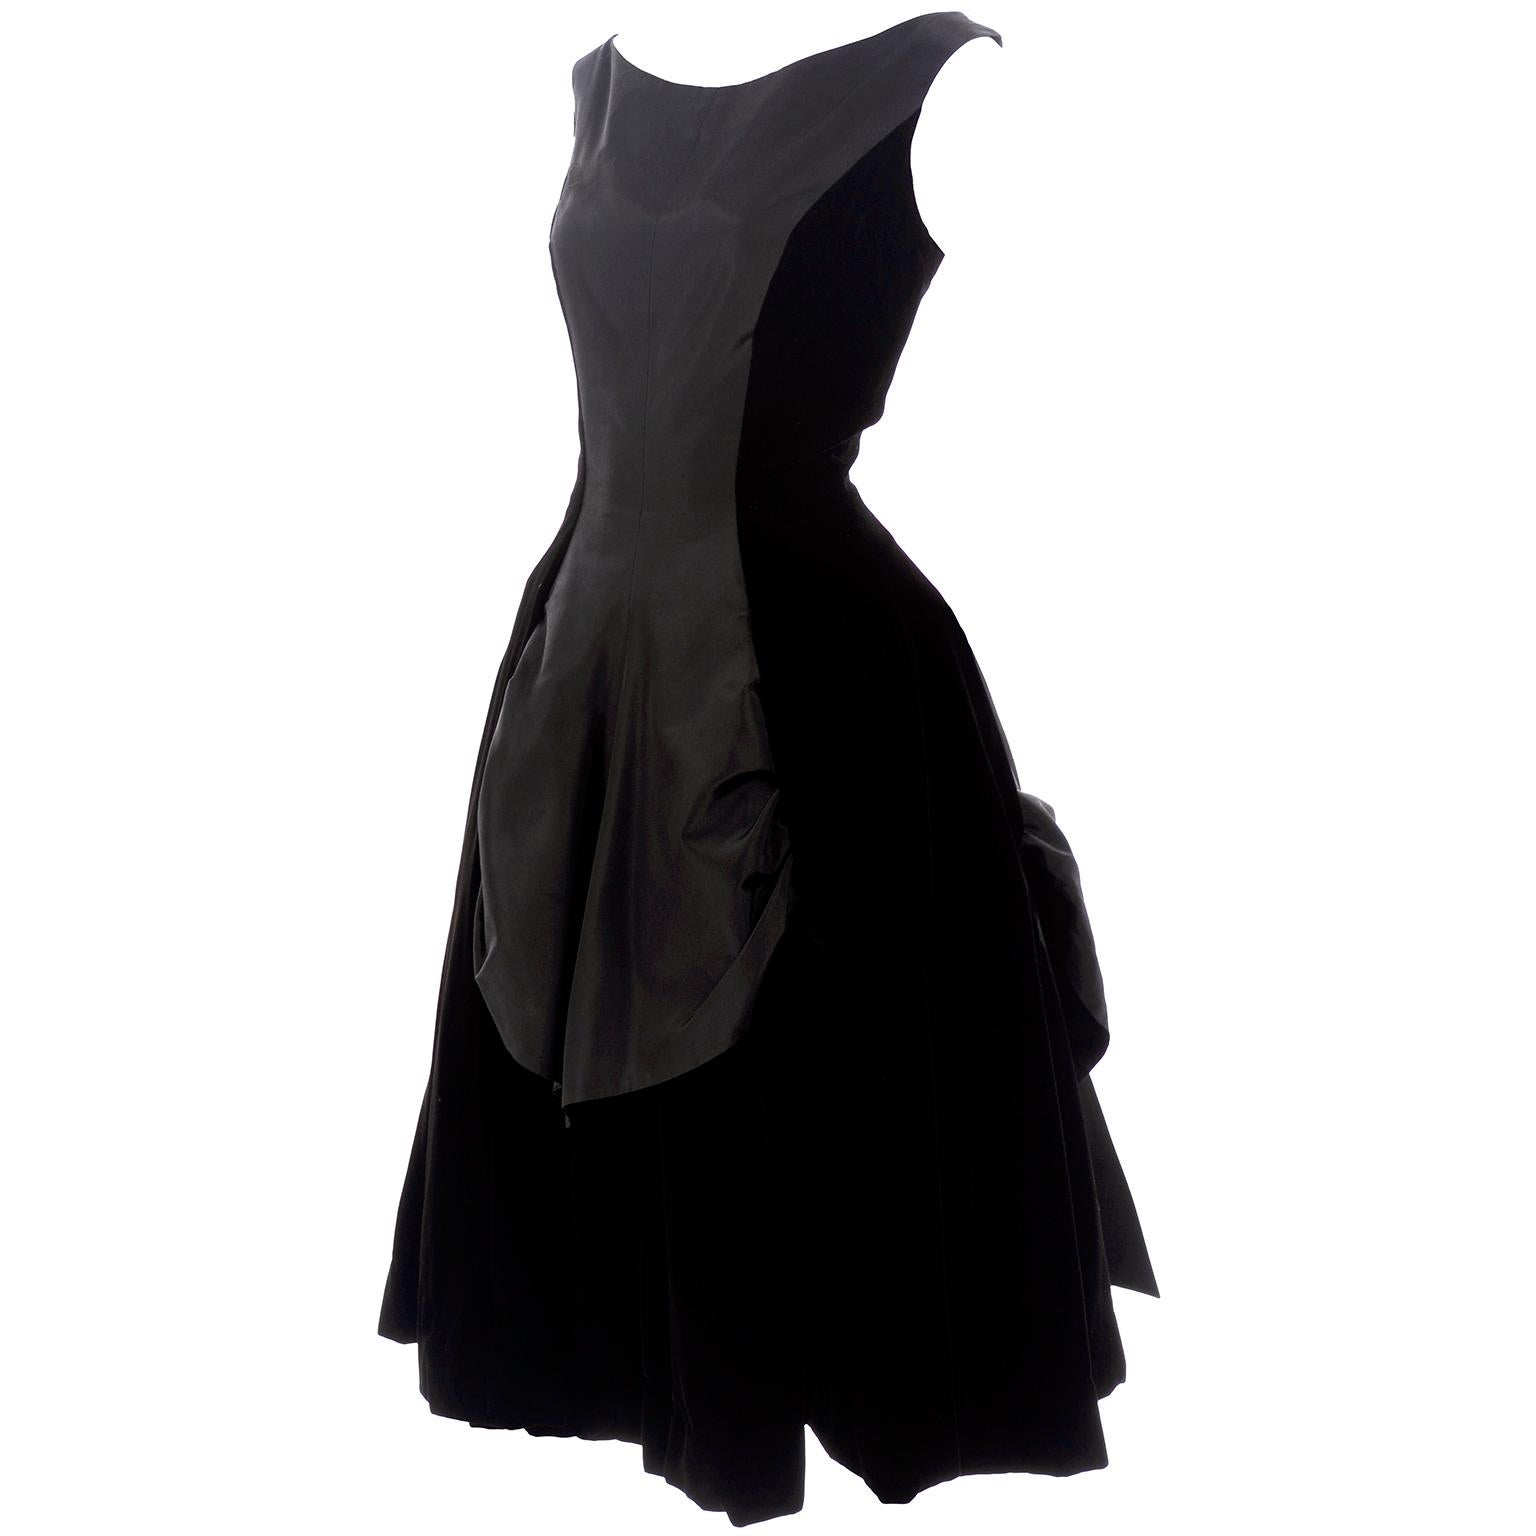 1950s Black Velvet and Taffeta Vintage Party Dress With Full Skirt